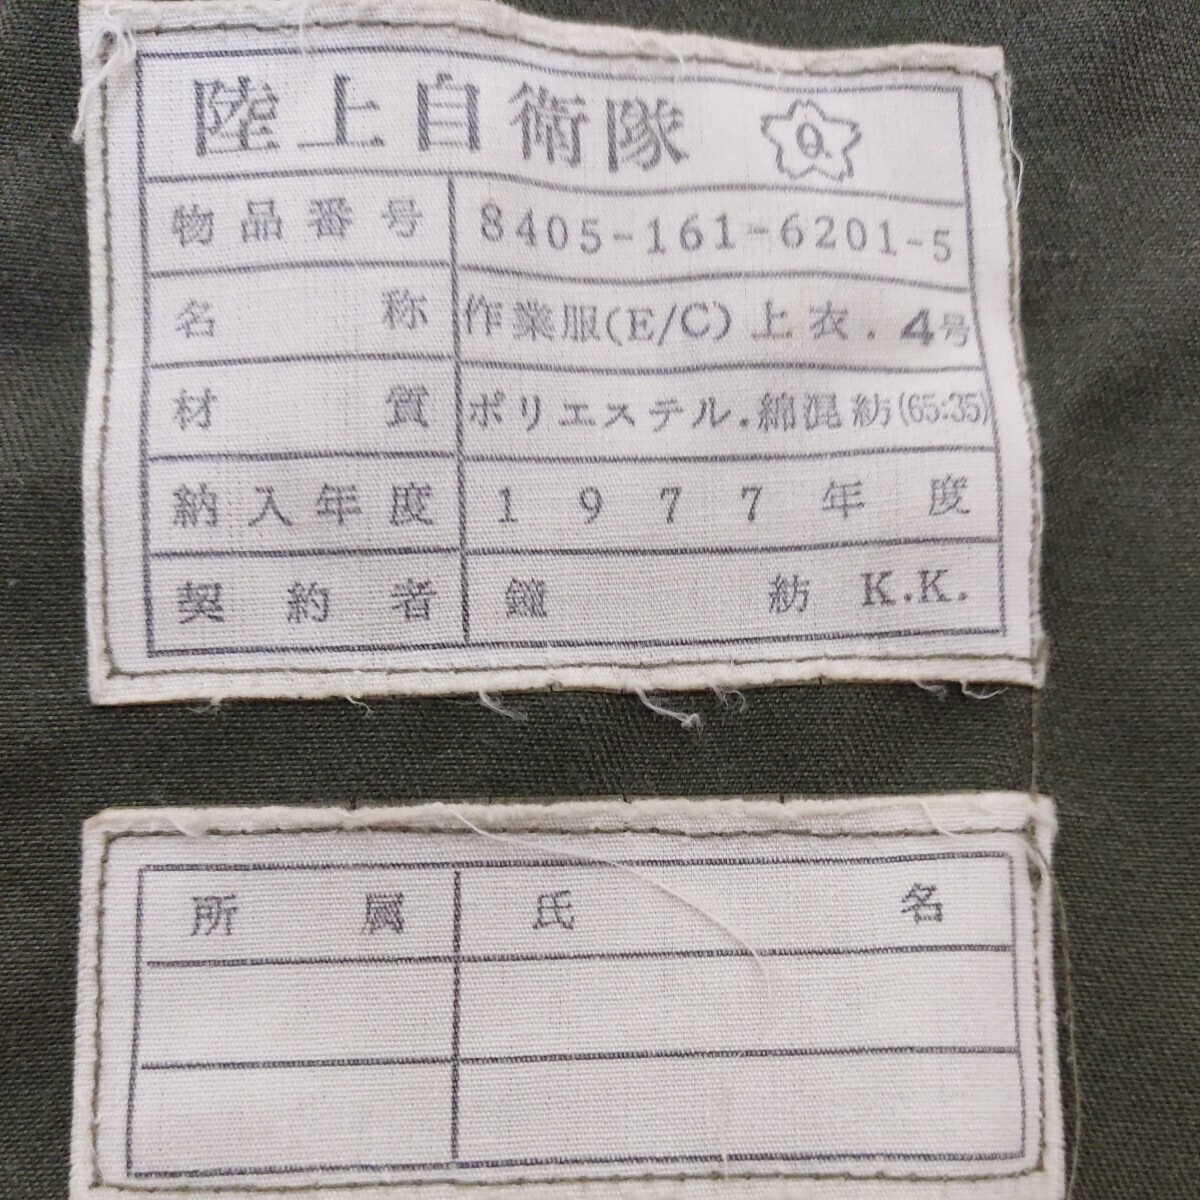 陸上自衛隊 作業服 (E/C) 上衣 4号 1977年 桜Q ジャケット_画像3